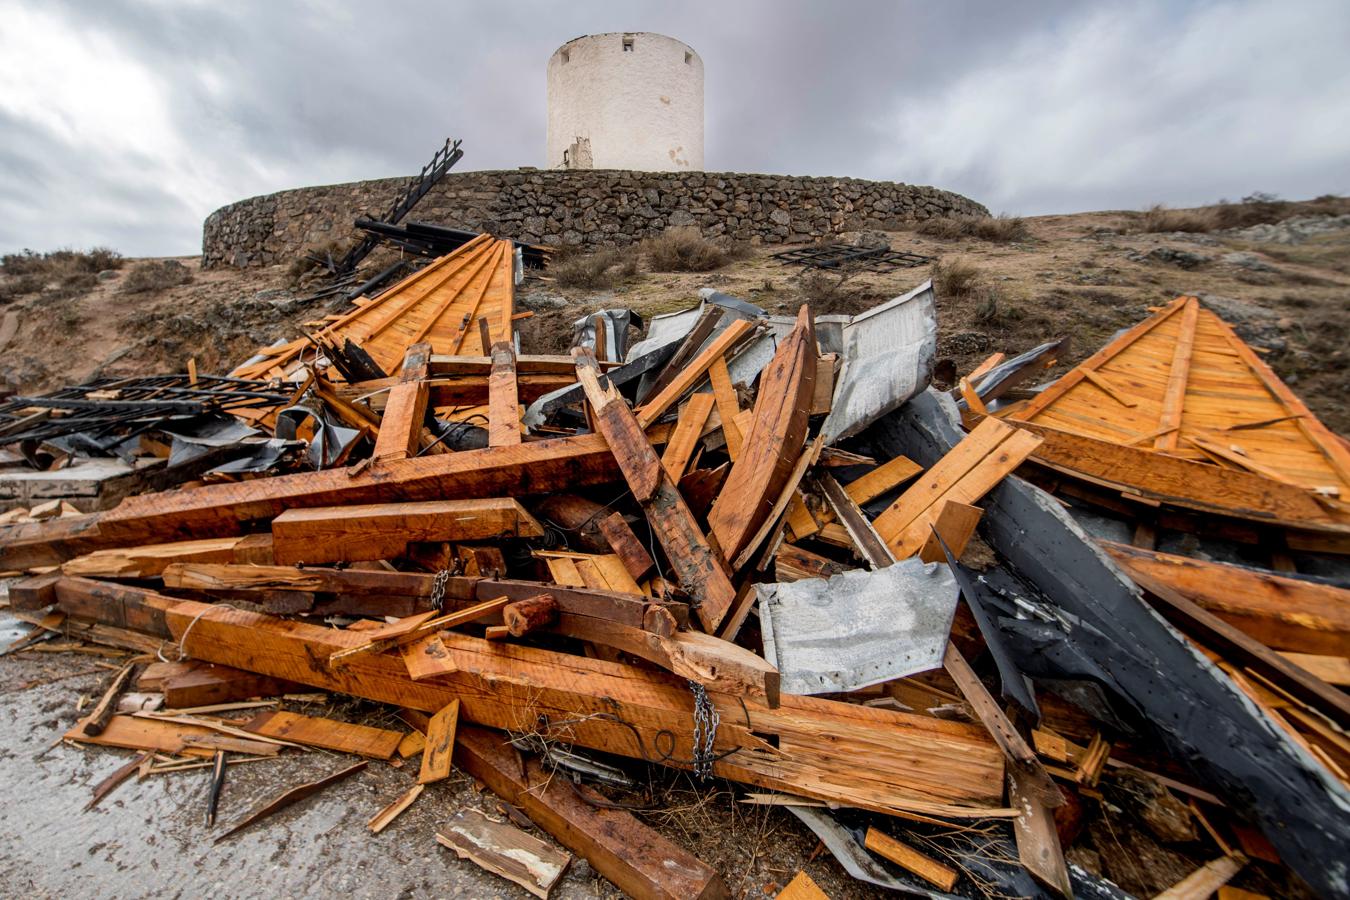 Toledo. El fuerte viento que ha soplado en Castilla-La Mancha ha causado importantes daños a los molinos de viento de Consuegra (Toledo), donde arrancado la techumbre de uno de ellos y ha roto aspas de varios otros.